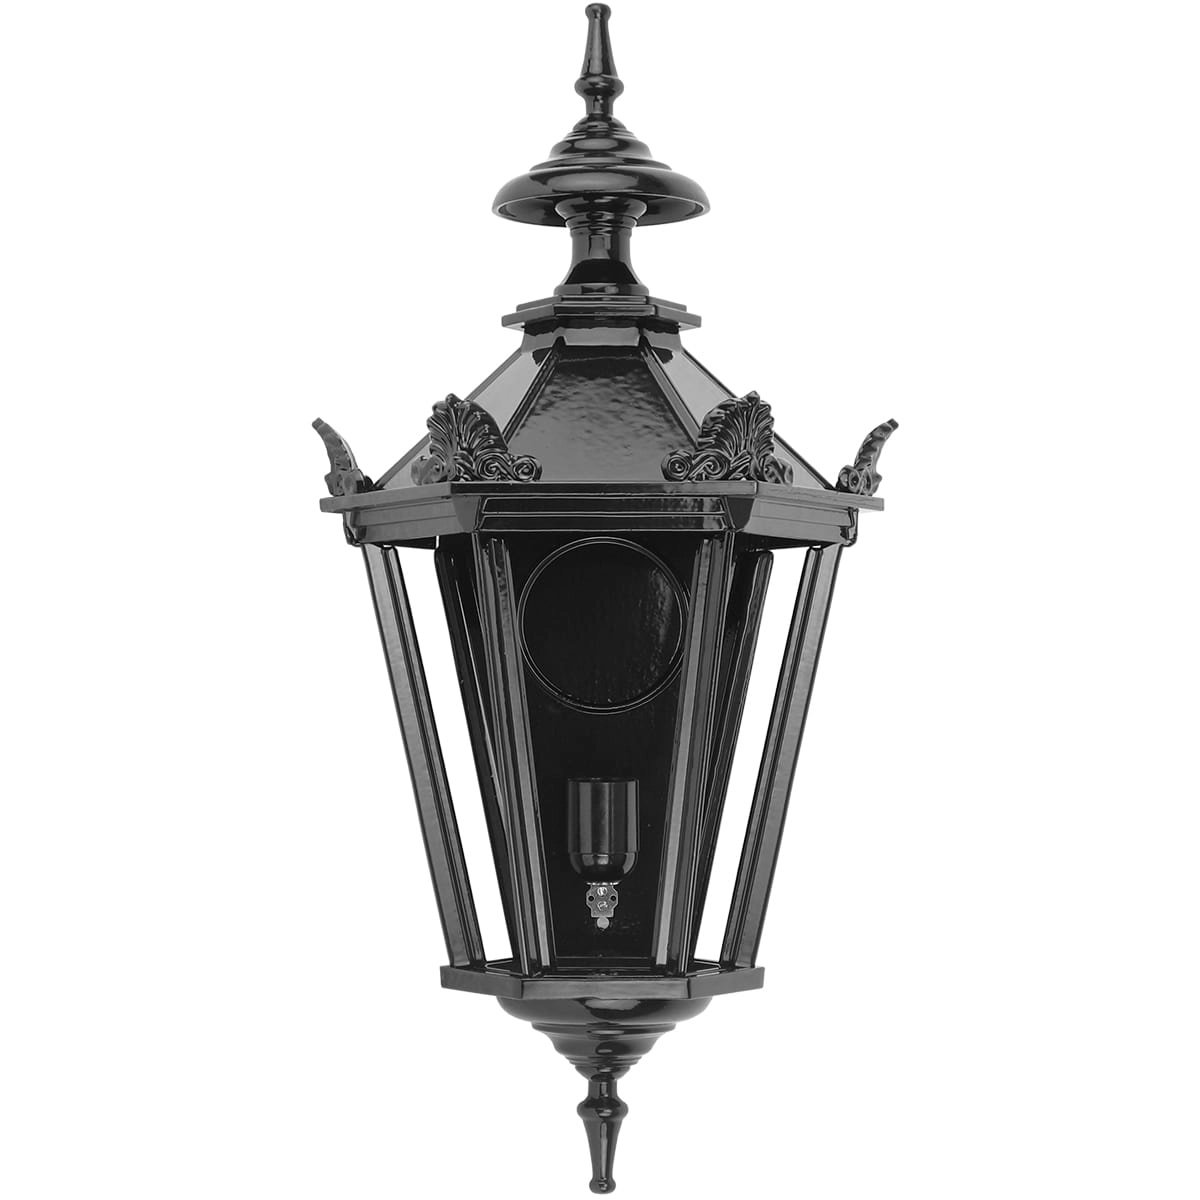 Muurlamp Zwolle met kronen L - 64 cm